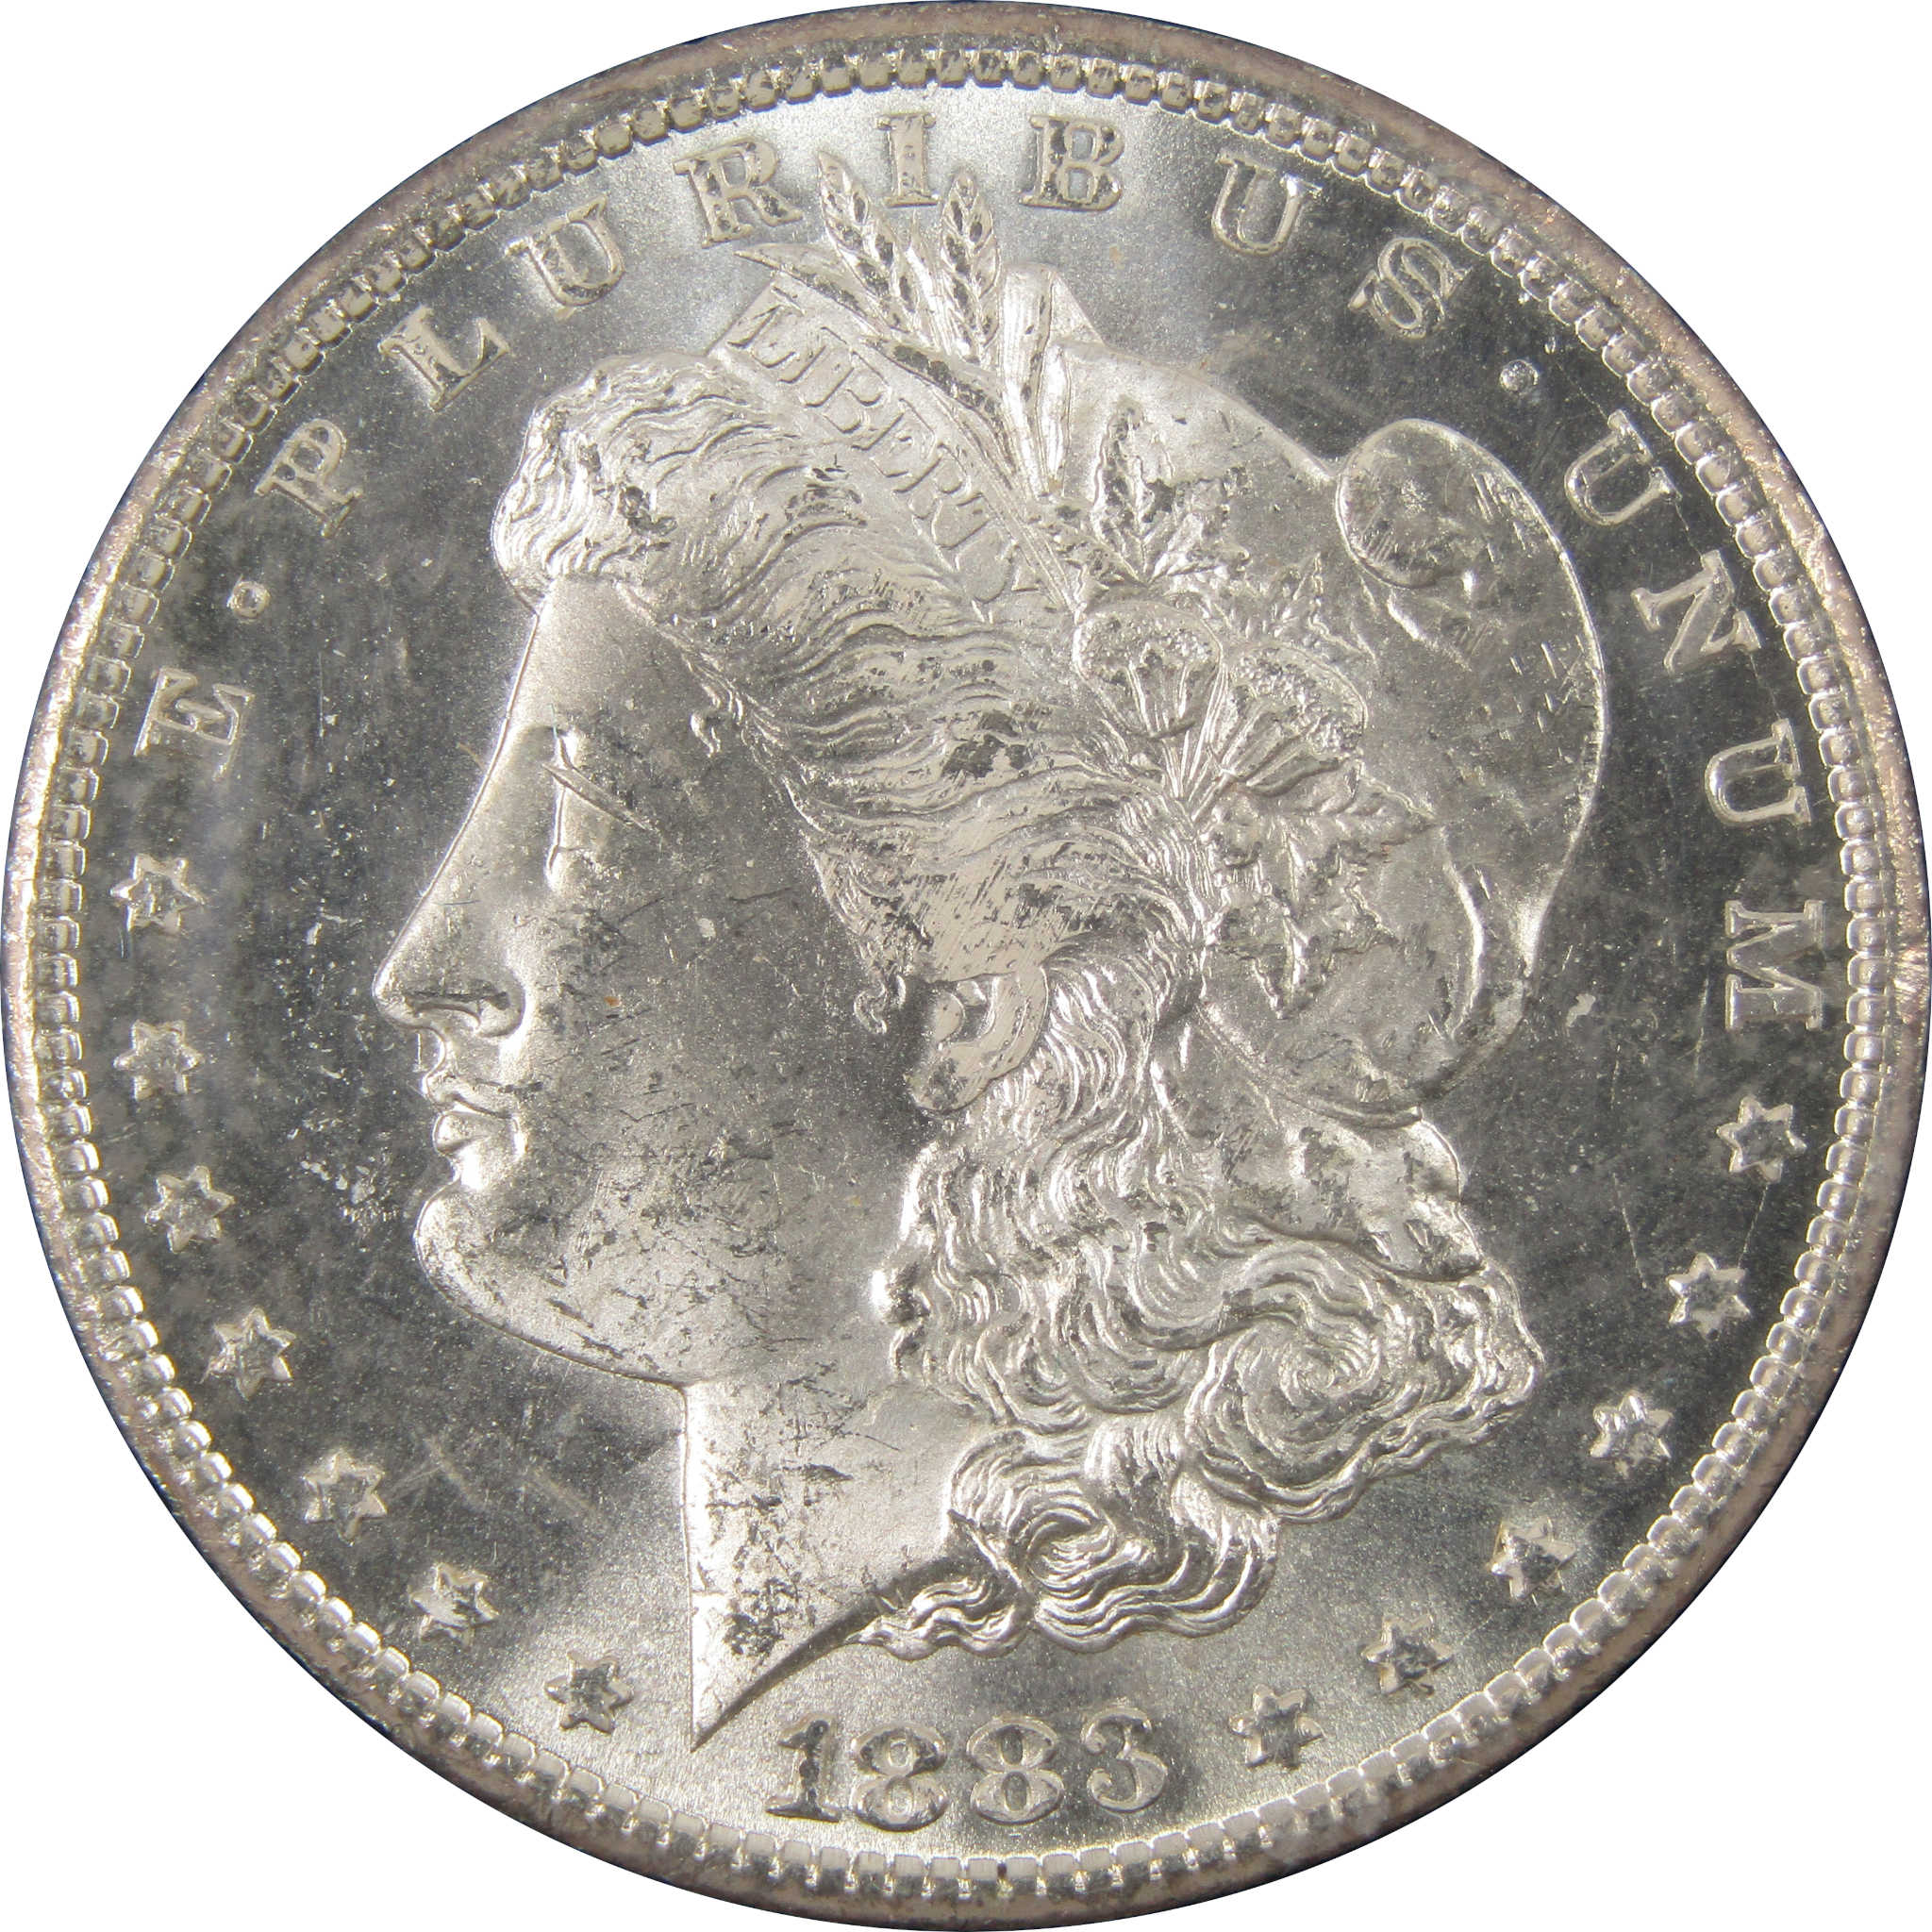 1883 CC GSA Morgan Dollar BU Choice Uncirculated Silver $1 SKU:I9439 - Morgan coin - Morgan silver dollar - Morgan silver dollar for sale - Profile Coins &amp; Collectibles